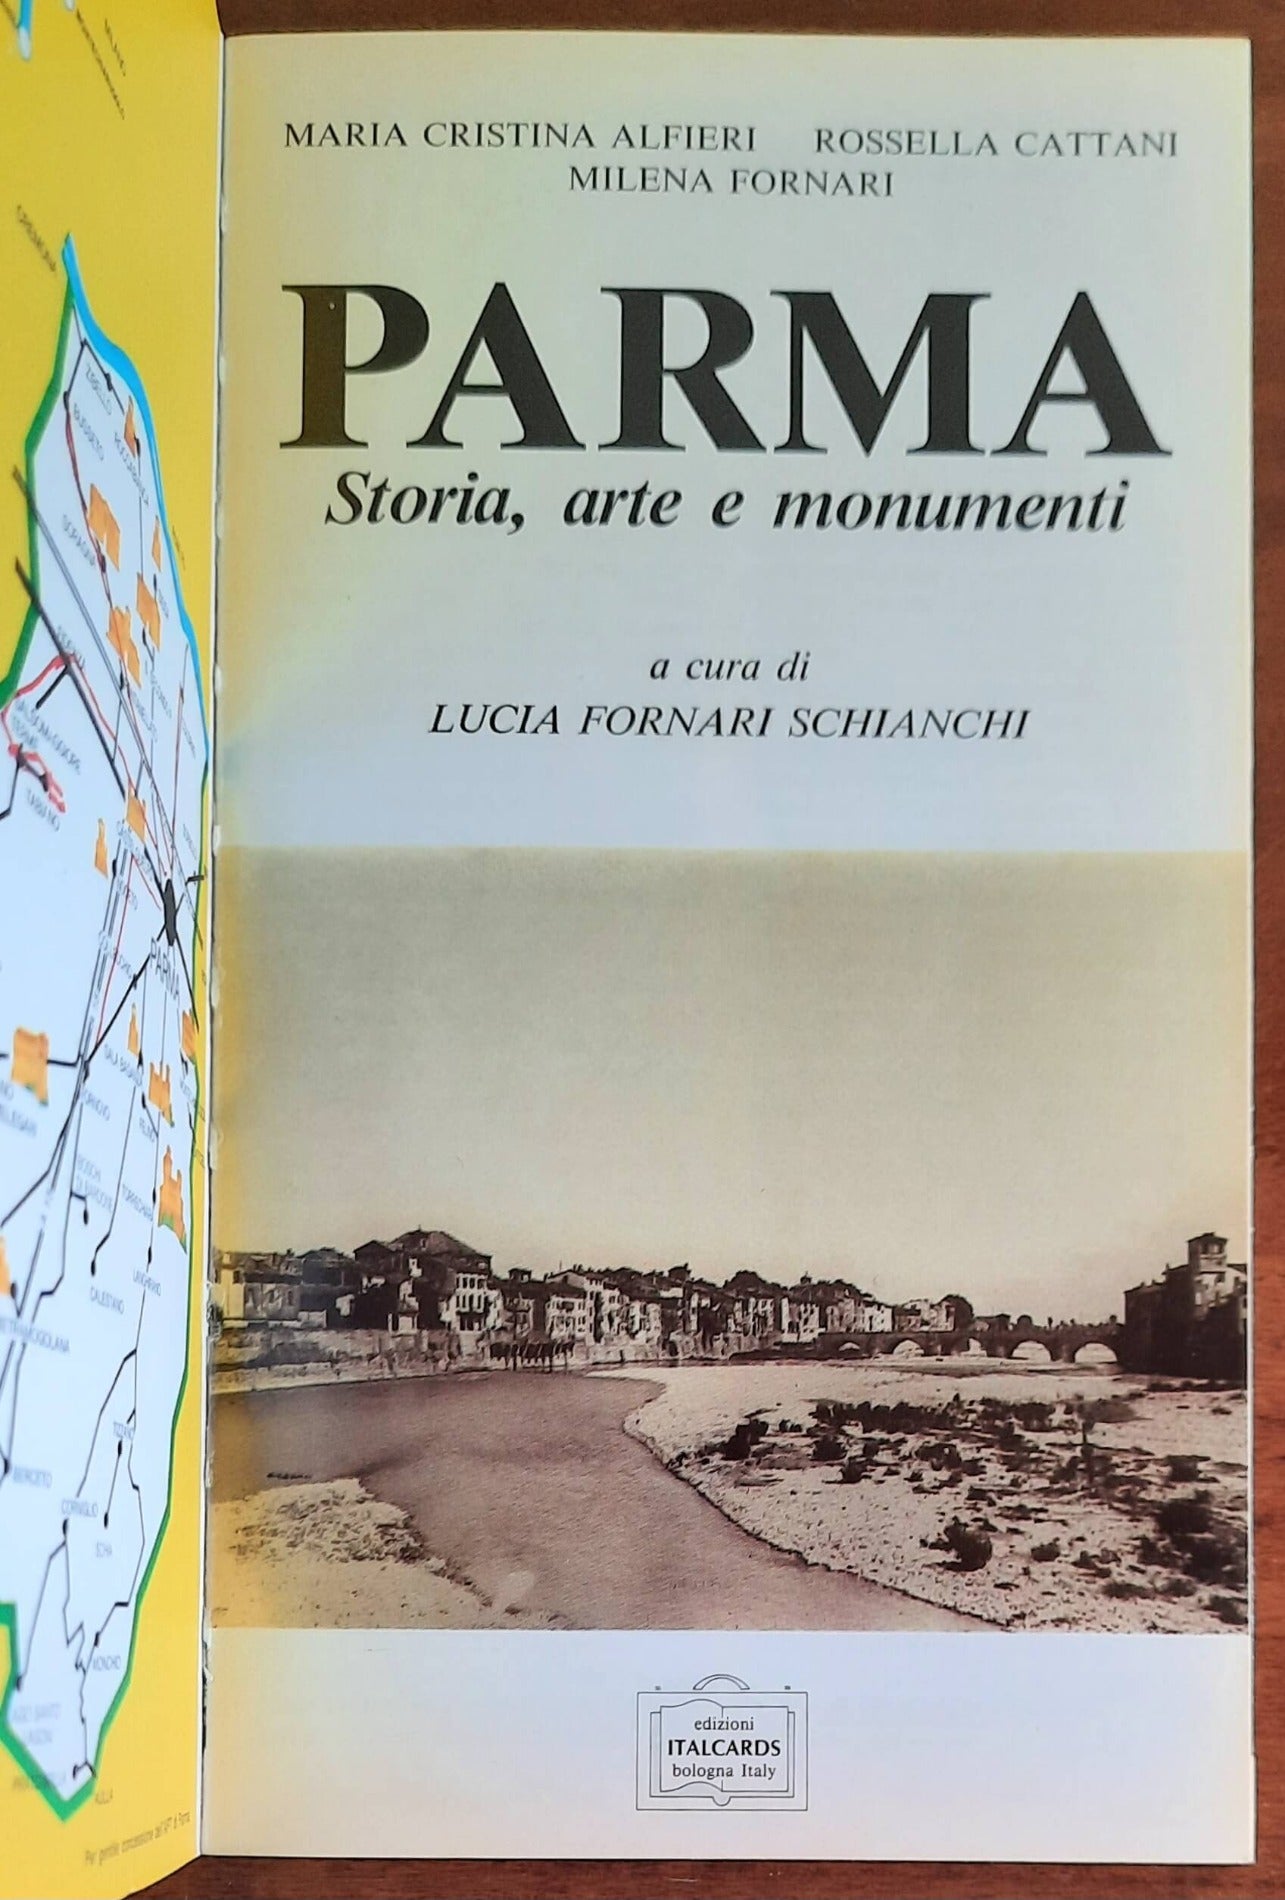 Parma. Storia, arte e monumenti. Guida monumentale ed artistica della città e della provincia